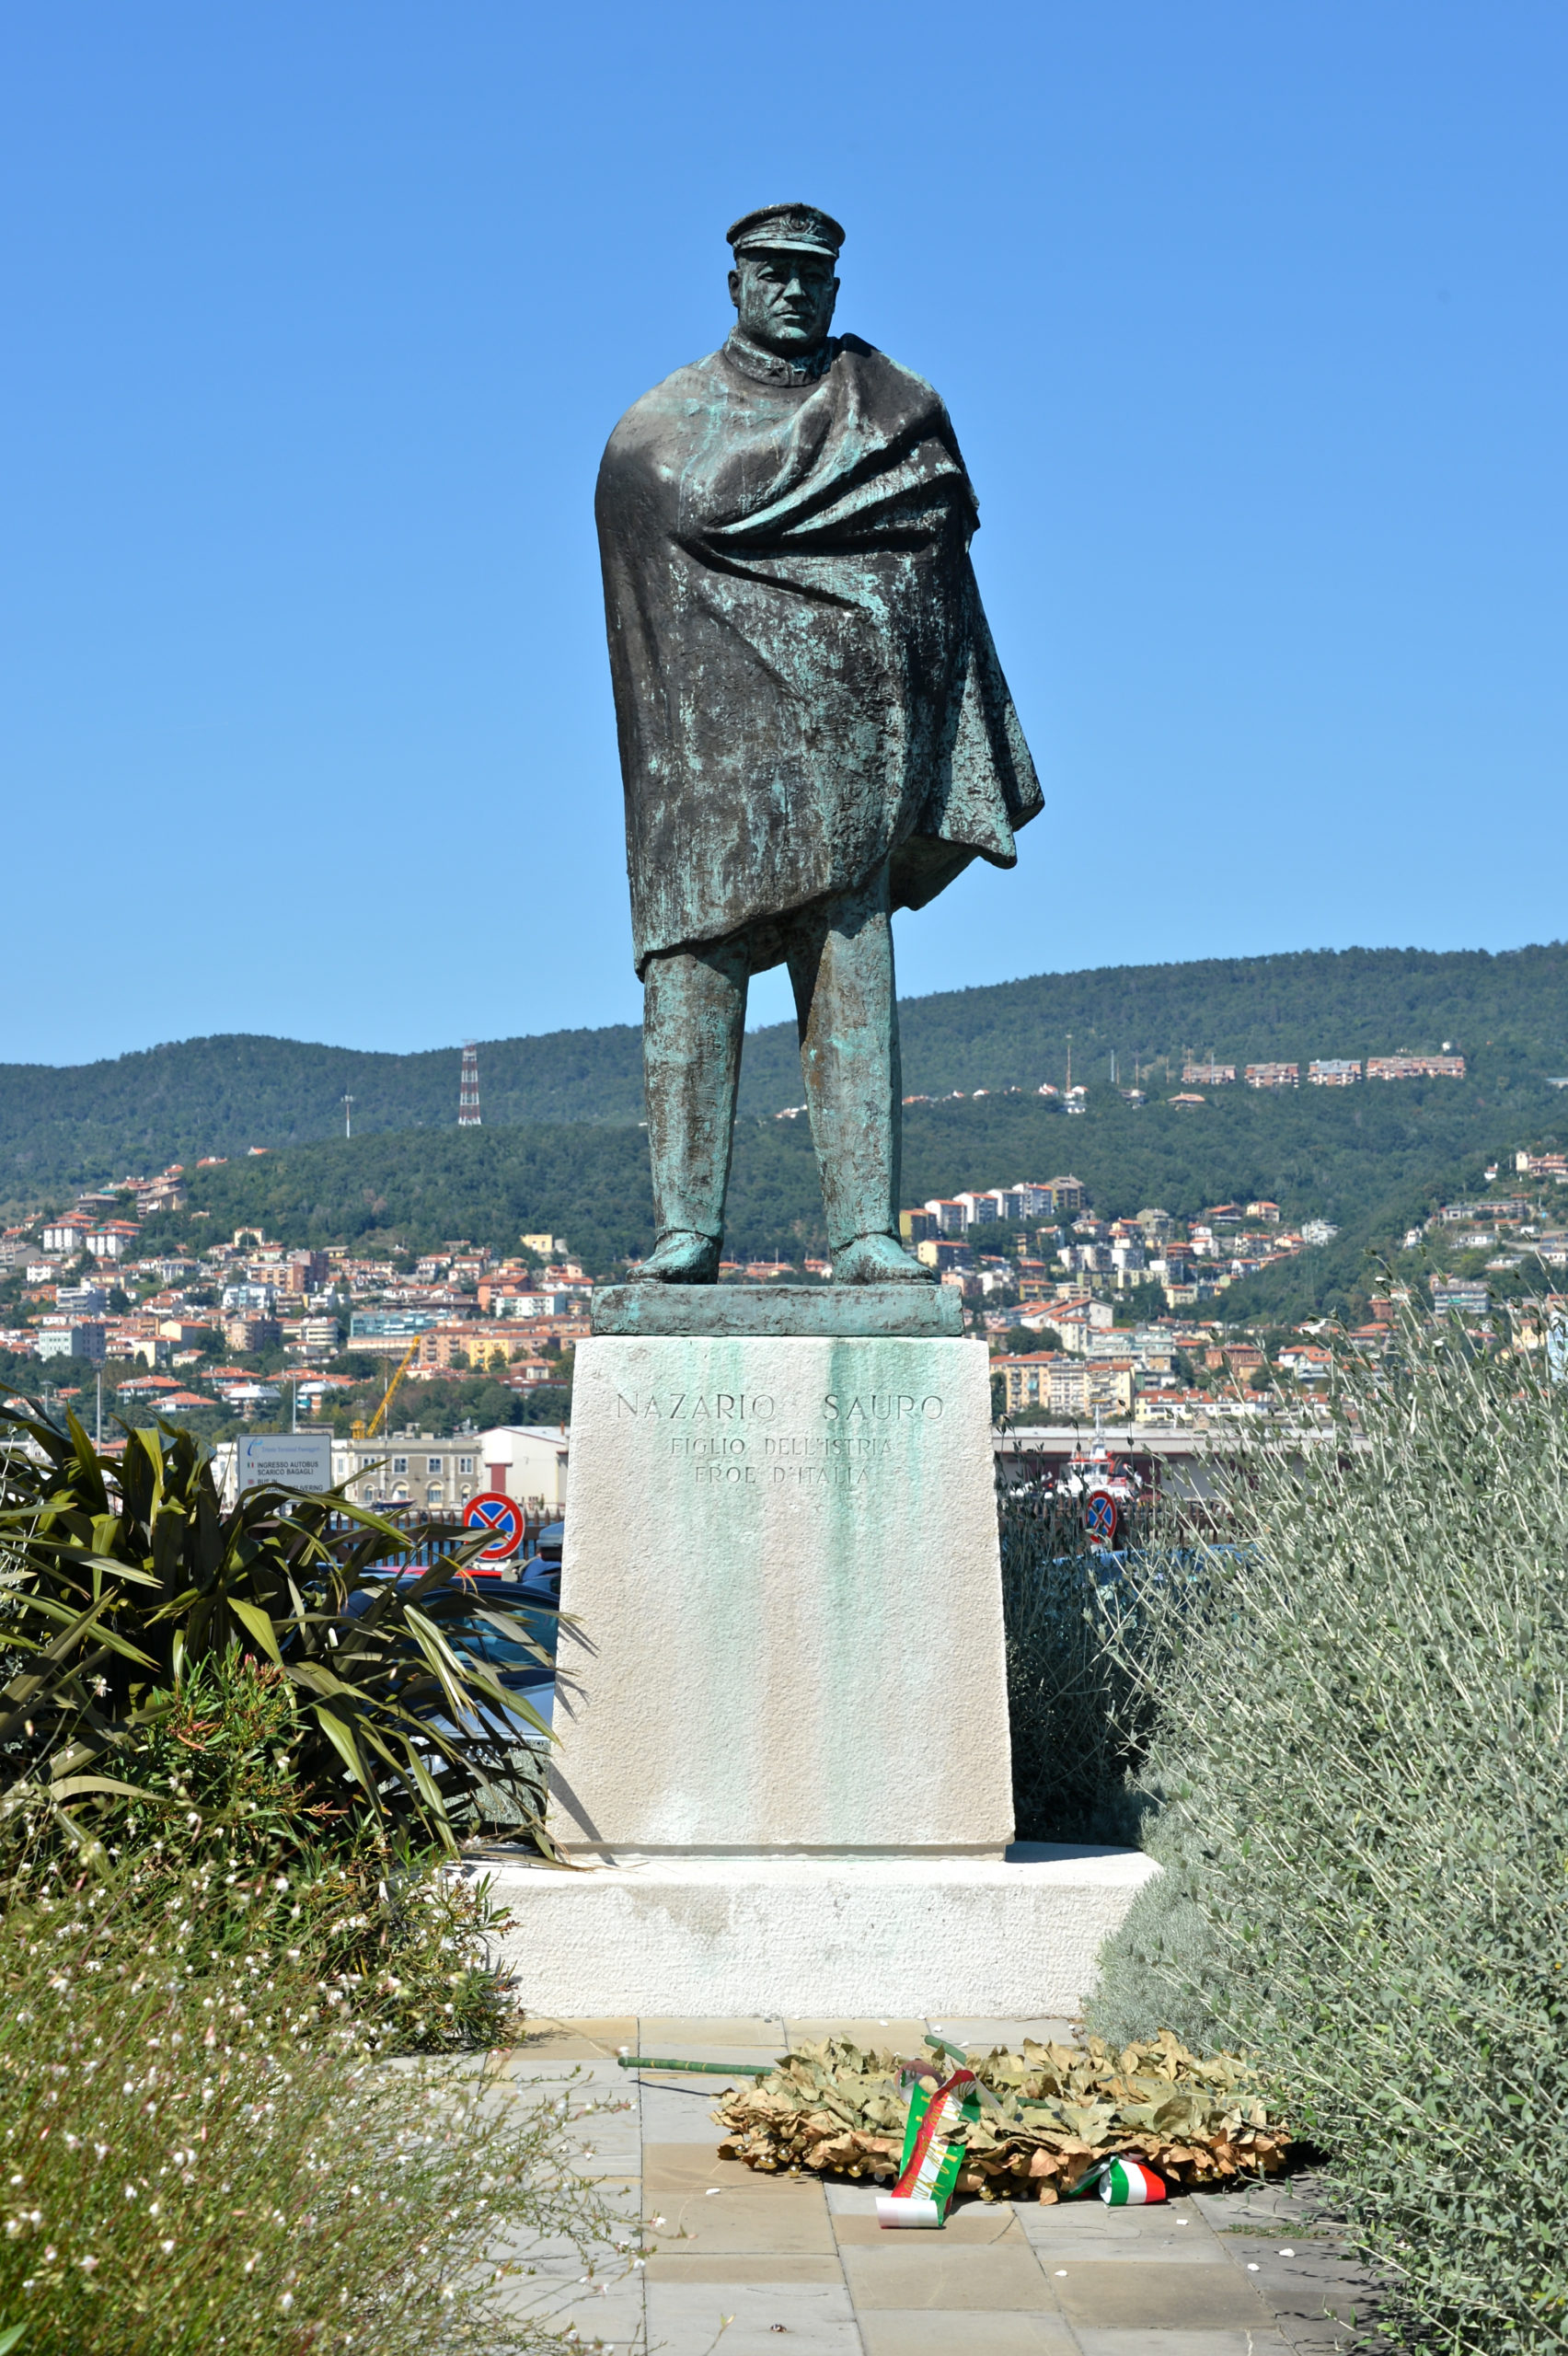 Statua di Nazario Sauro nell'omonima riva di Trieste